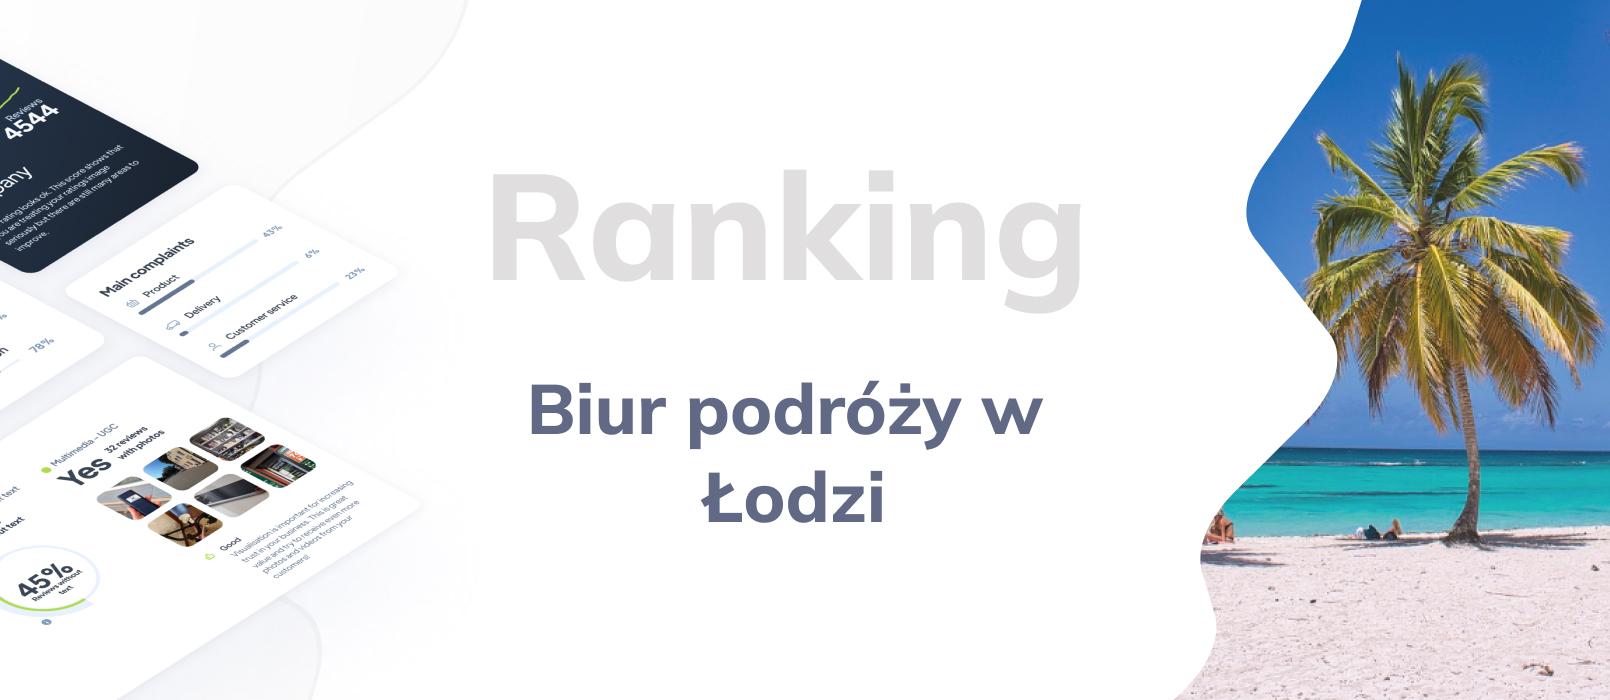 Biura podróży w Łodzi - ranking TOP 10